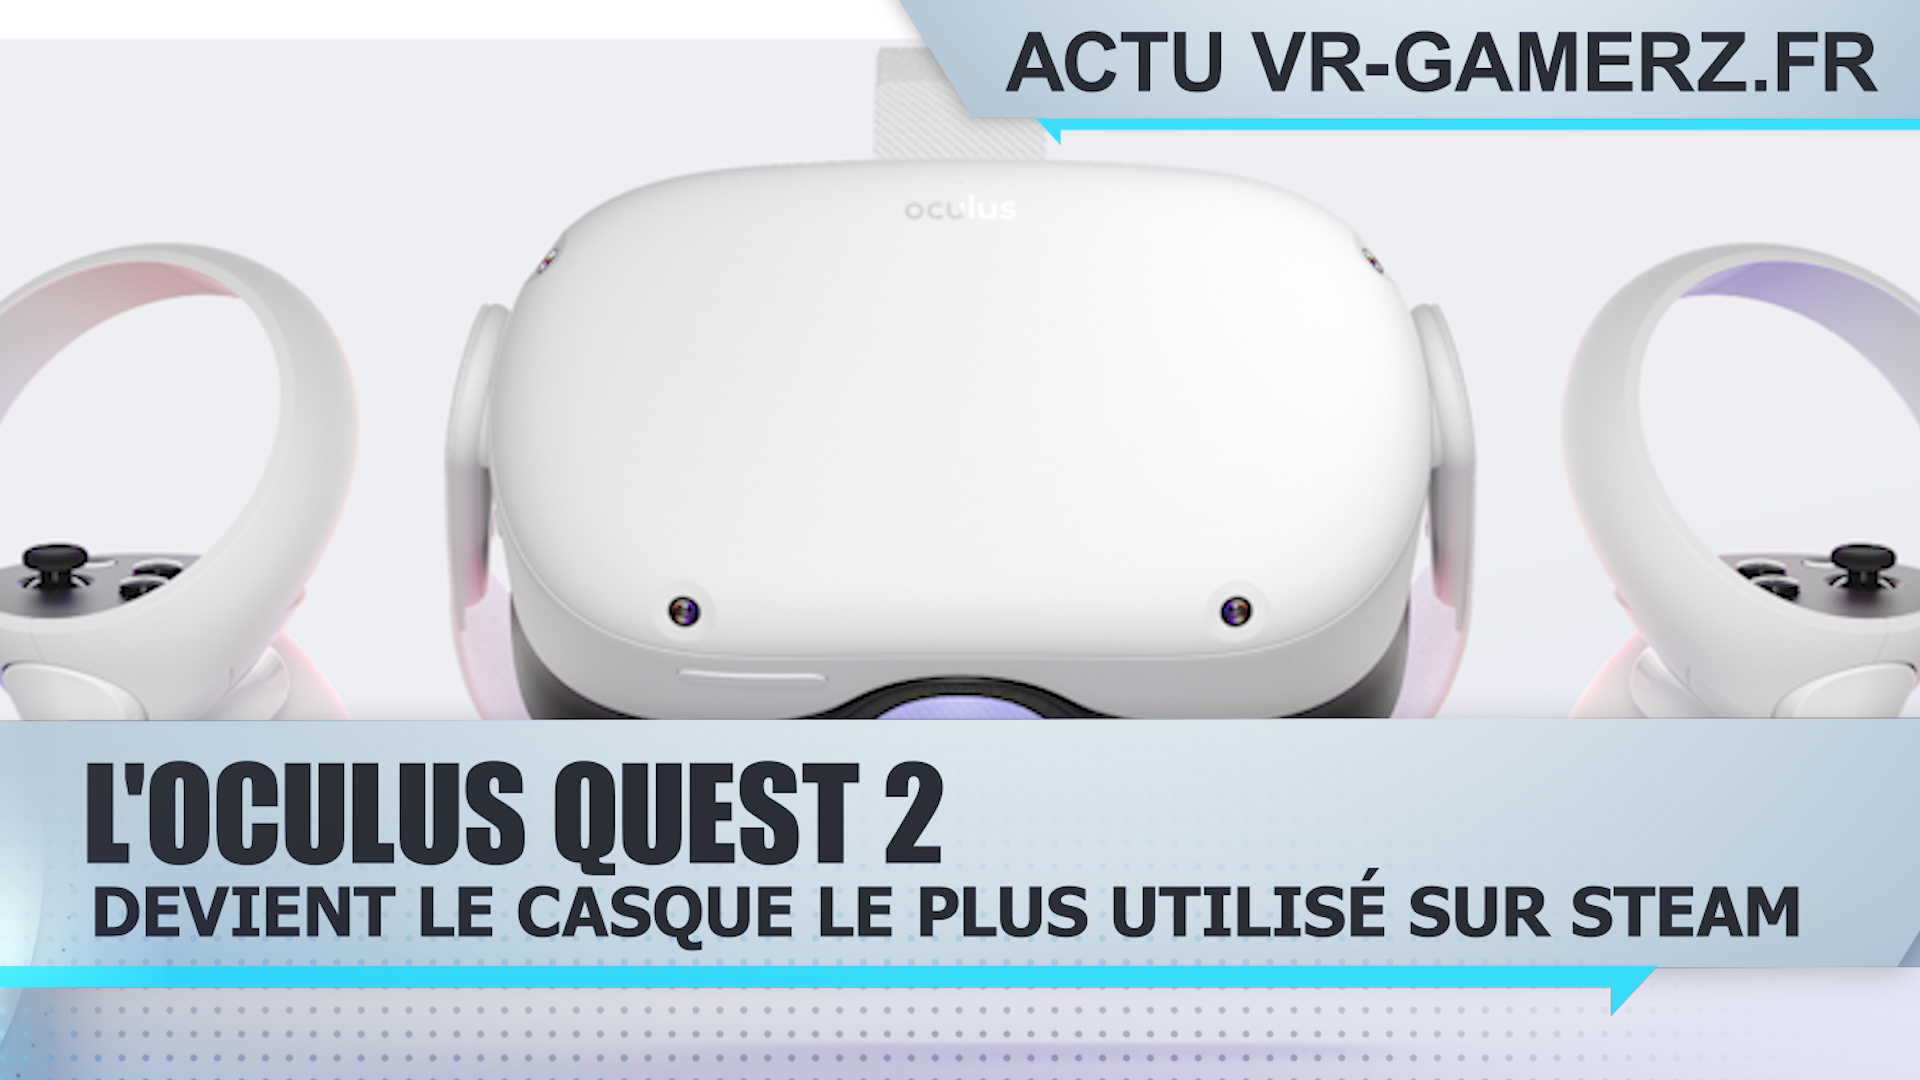 L’Oculus quest 2 est le casque le plus utilisé sur Steam !